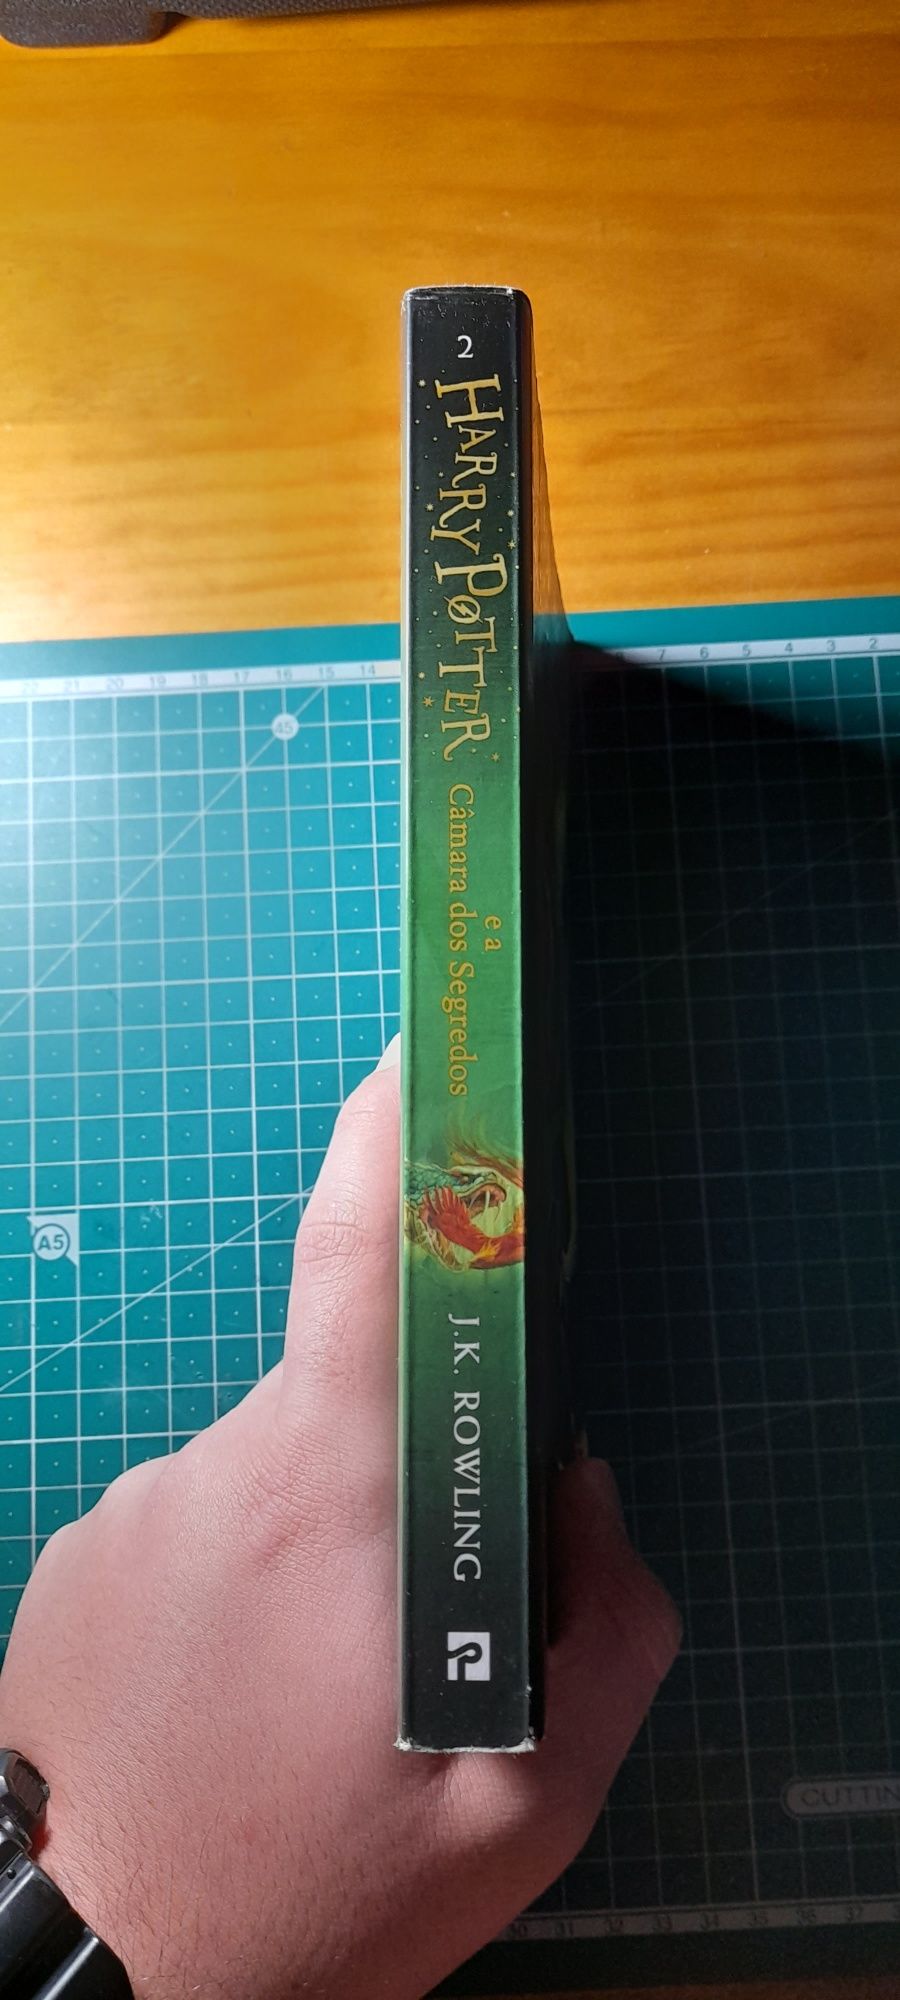 Livro "Harry Potter e a câmara dos segredos"